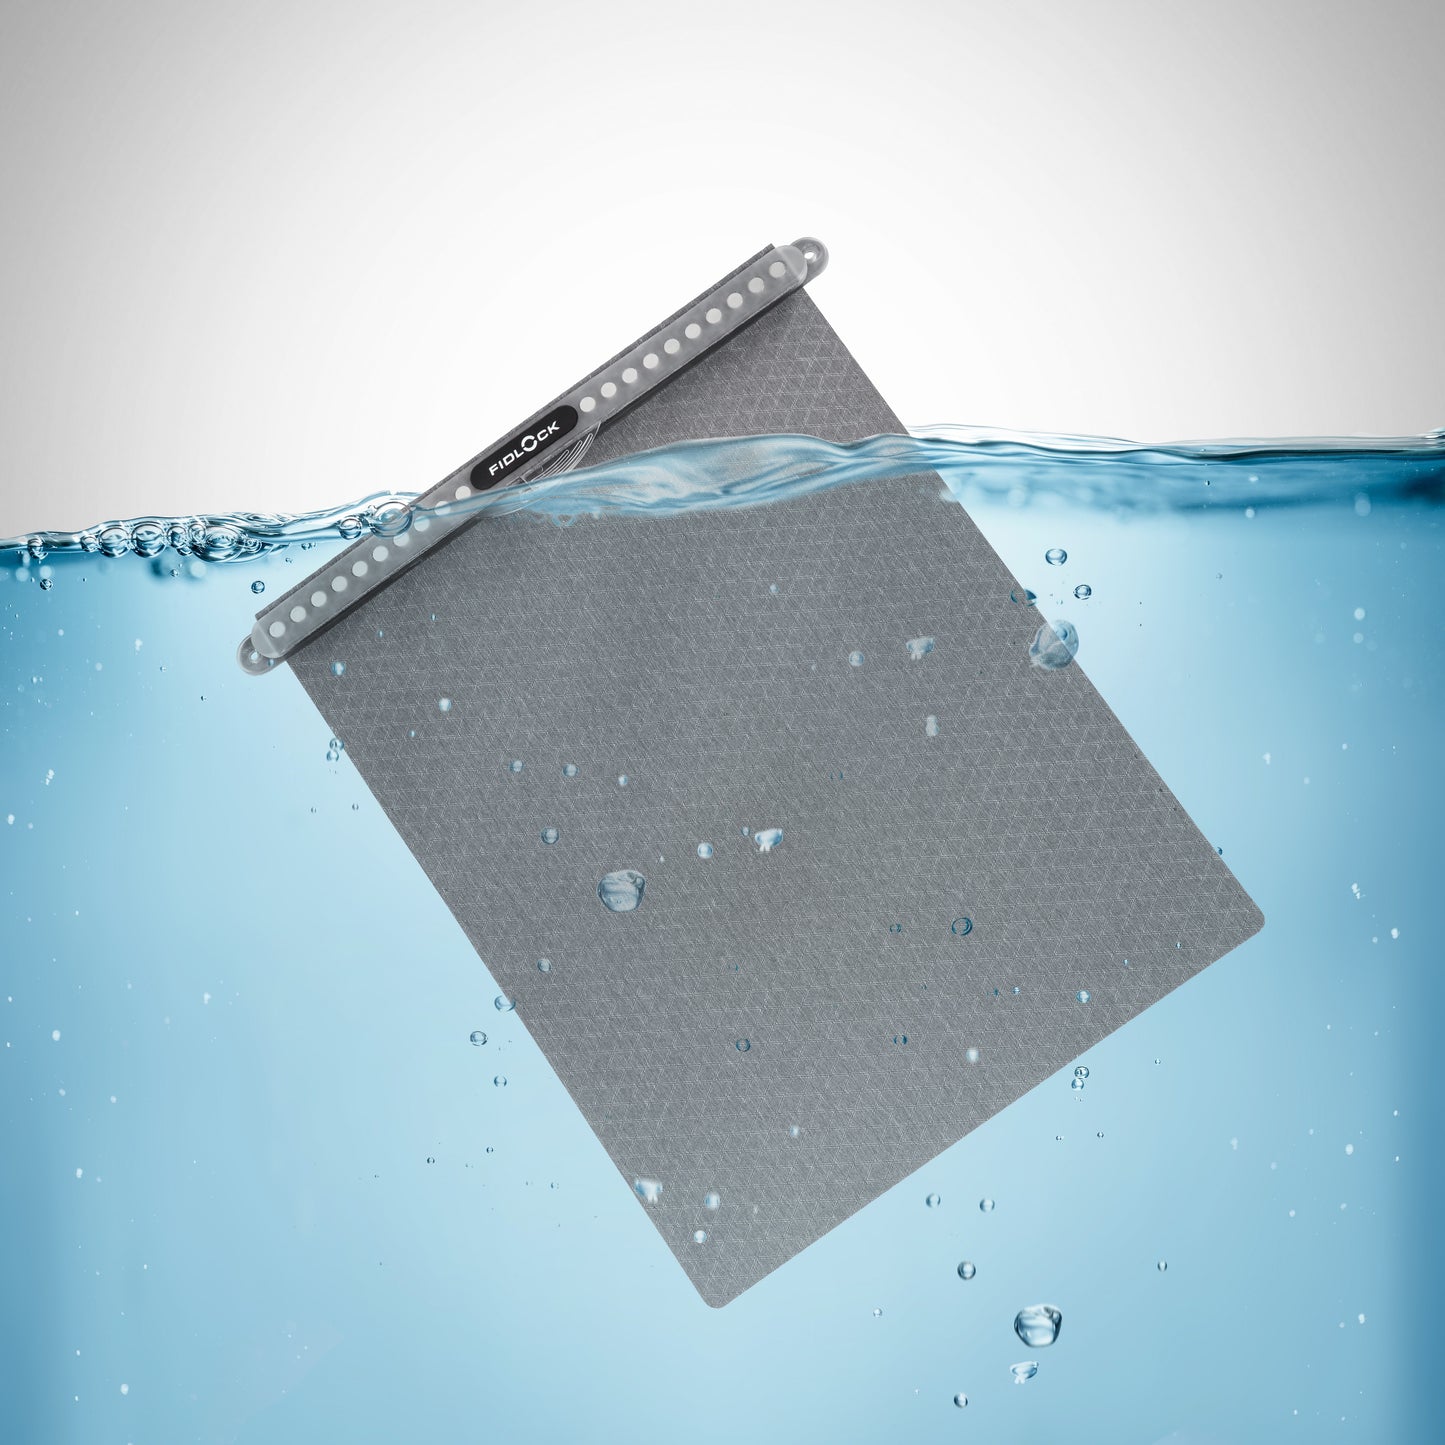 Hermetic Waterproof Tablet Case - Dry Bag Mega